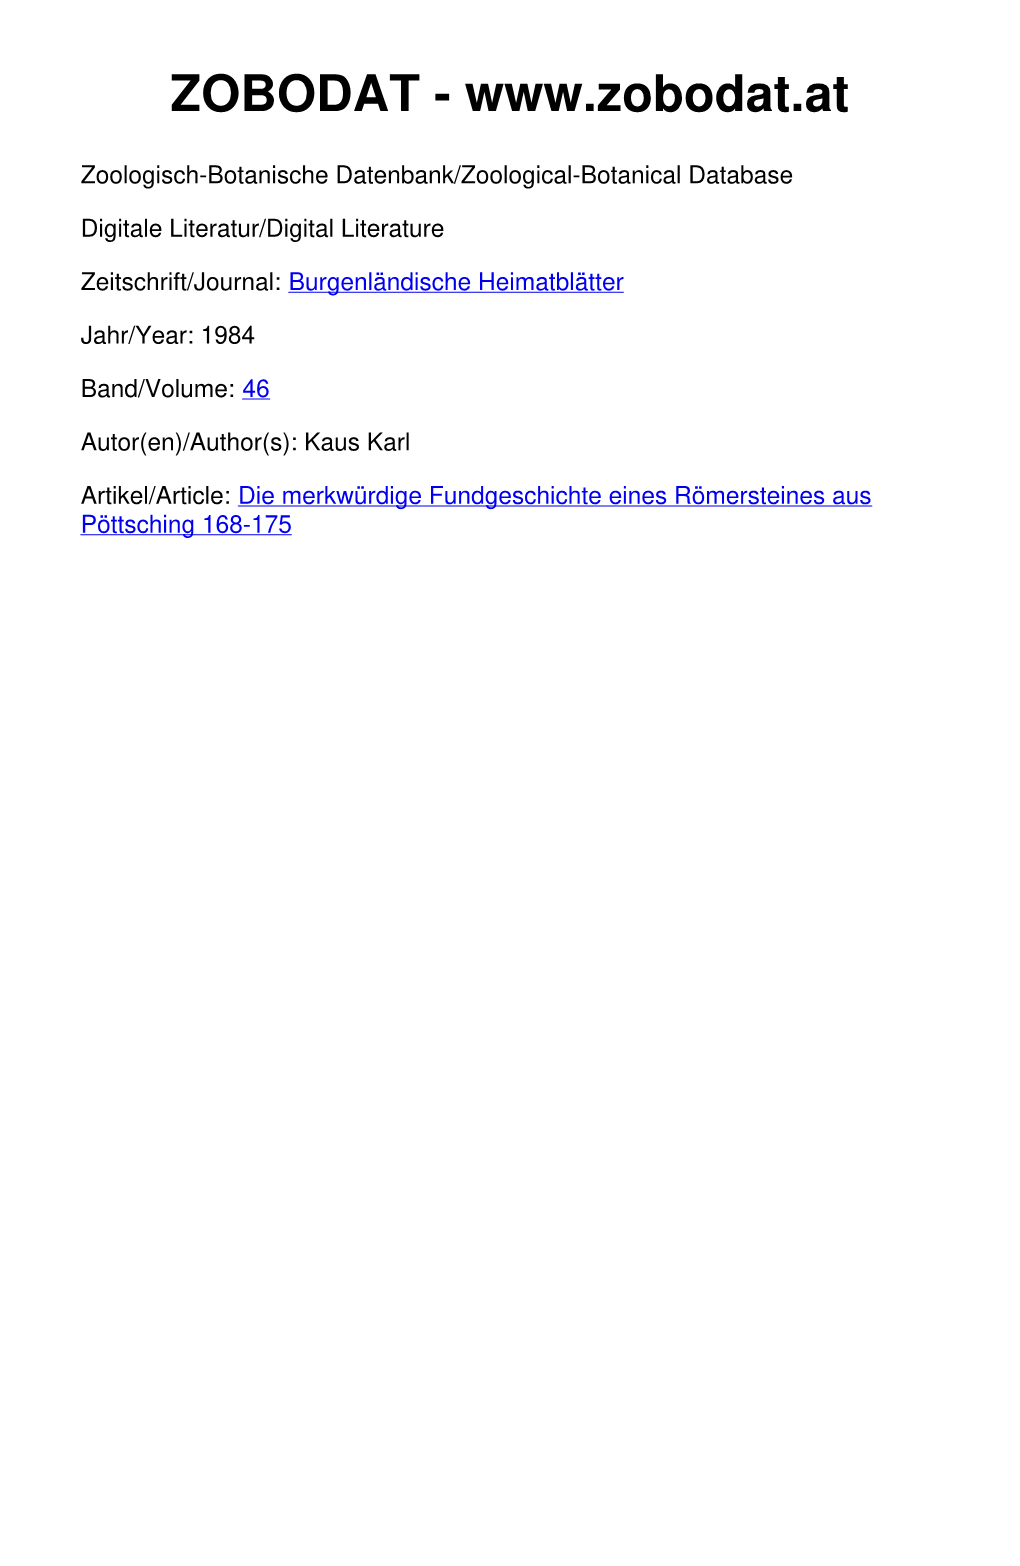 Die Merkwürdige Fundgeschichte Eines Römersteines Aus Pöttsching 168-175 ©Amt Der Burgenländischen Landesregierung, Landesarchiv, Download Unter